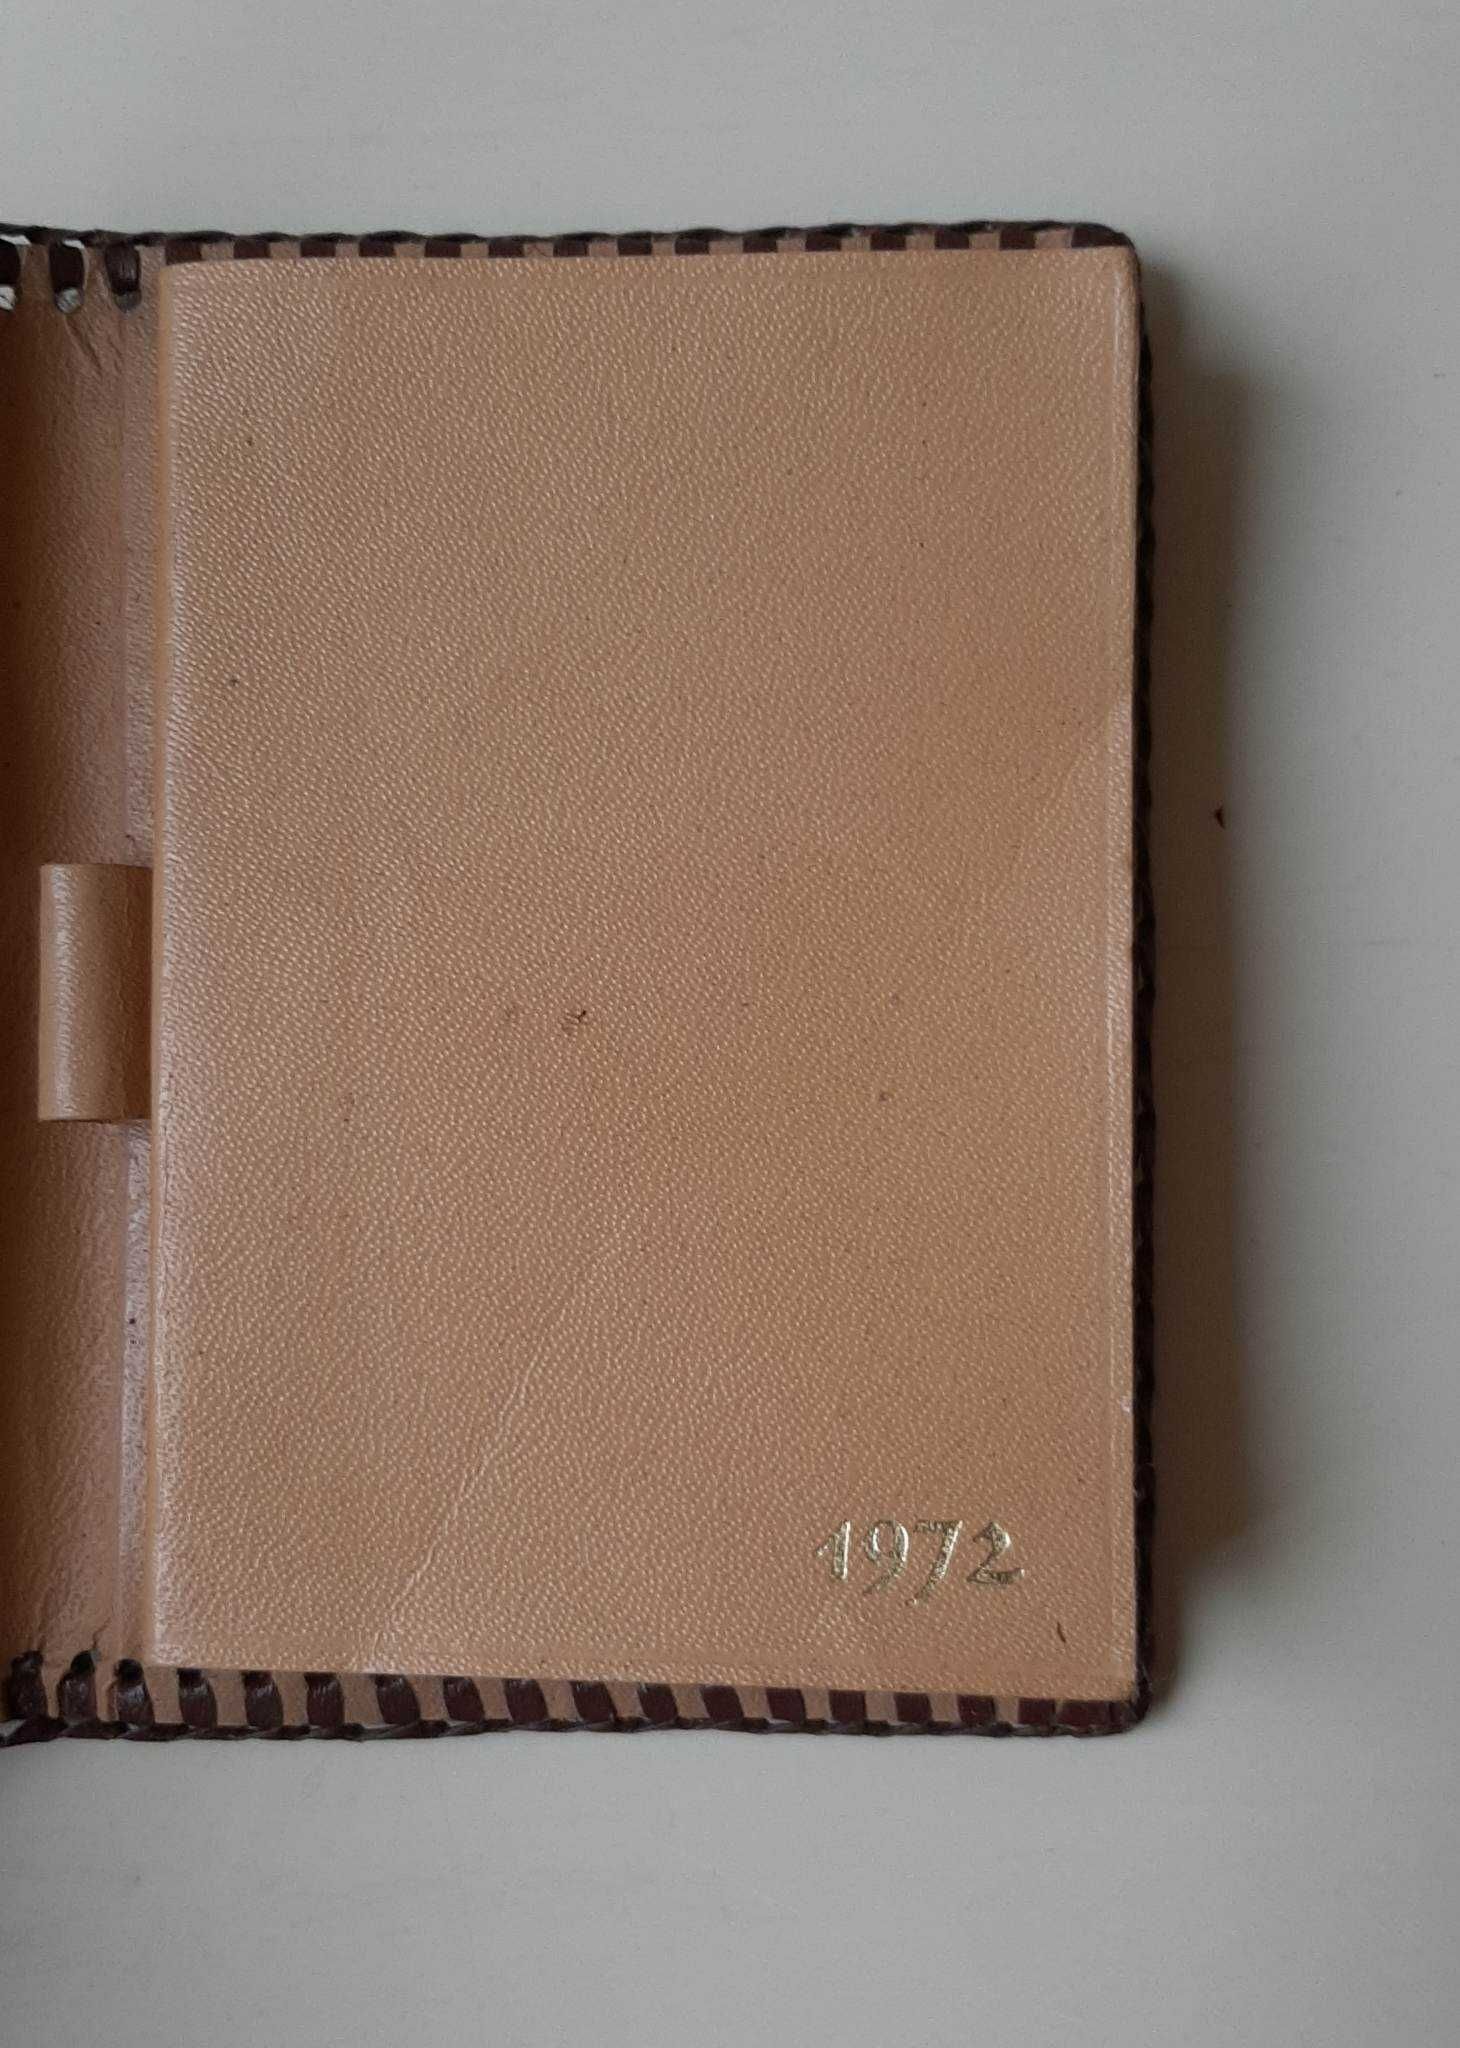 Agenda de bolso vintage em pele de 1972, NOVA